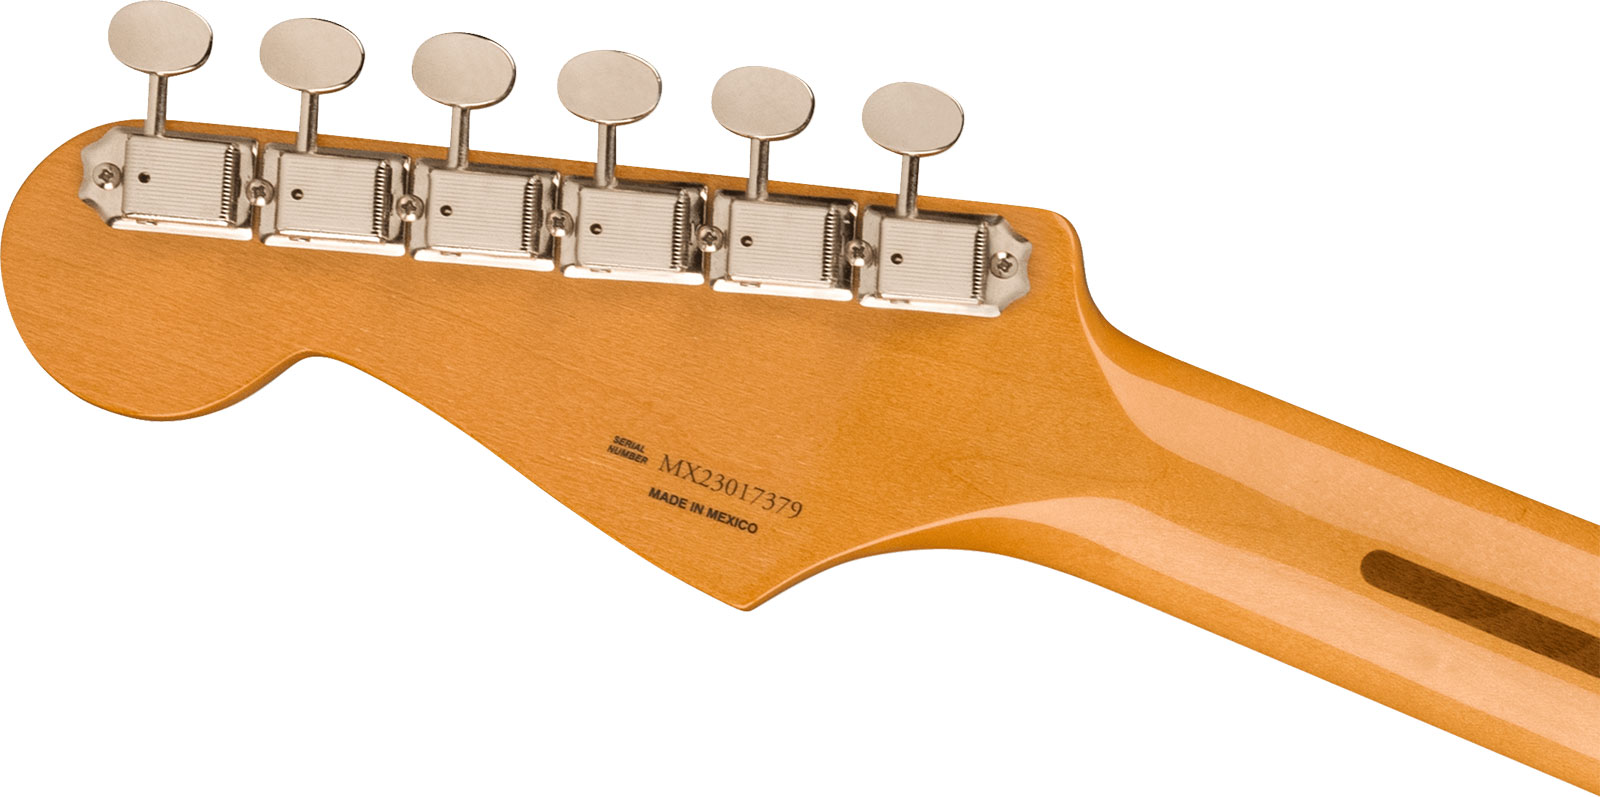 Fender Strat 50s Vintera 2 Mex 3s Trem Mn - Black - Elektrische gitaar in Str-vorm - Variation 3